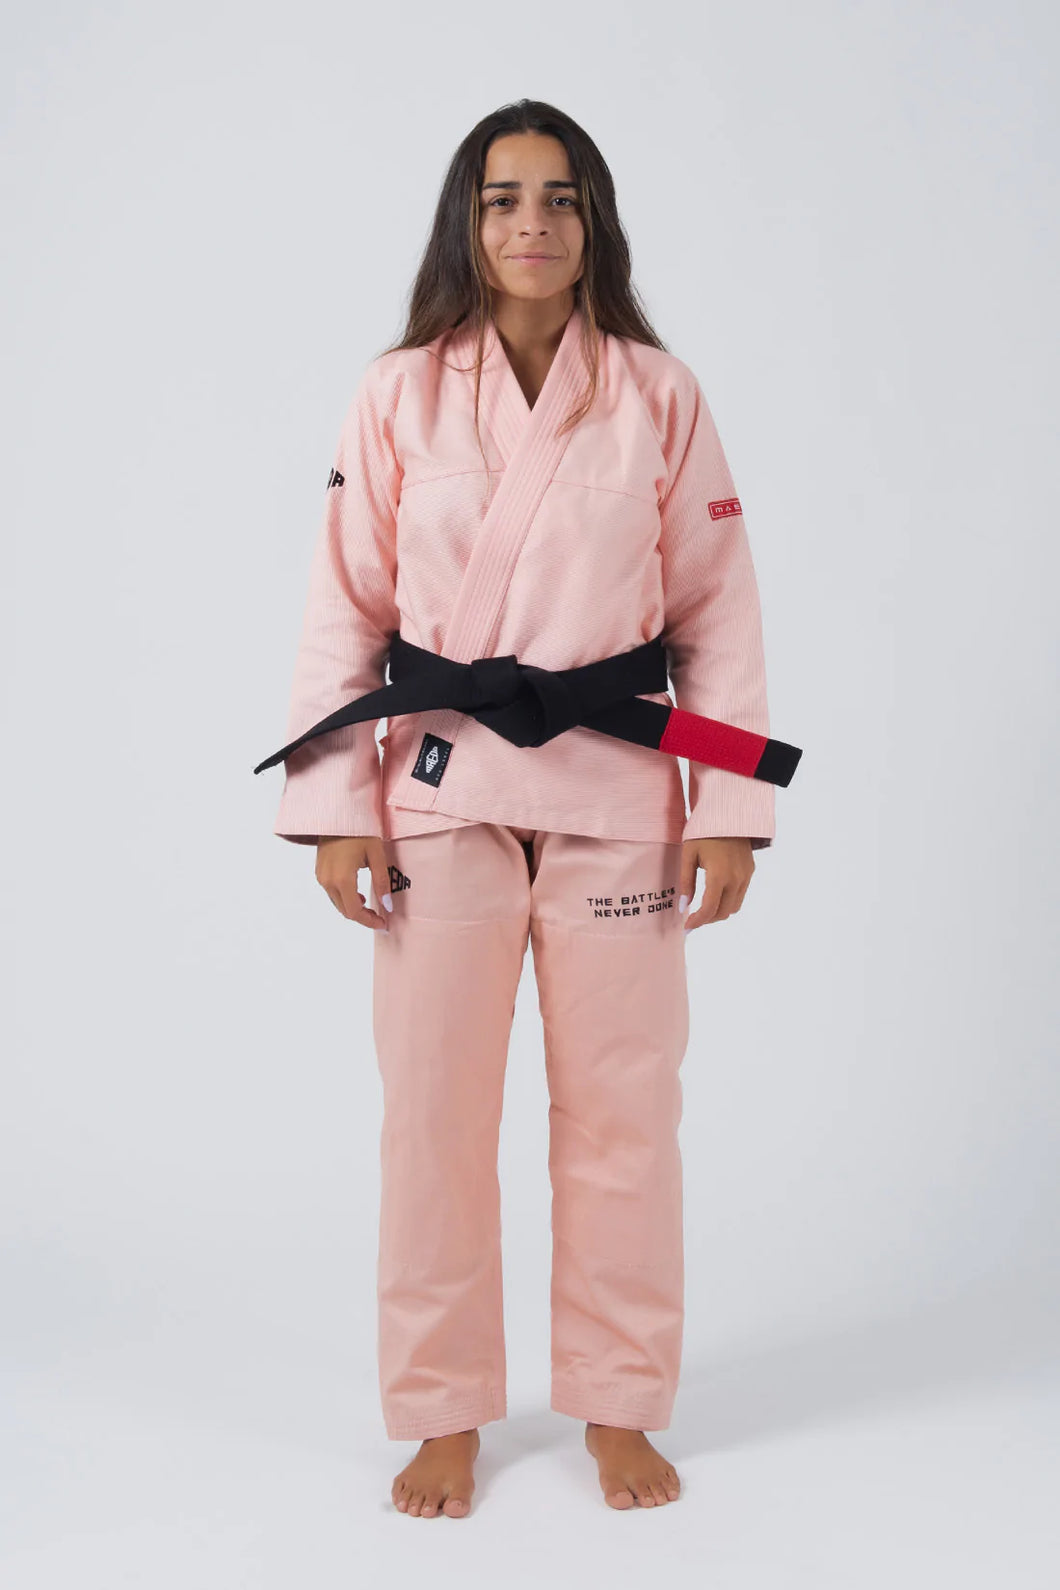 Kimono BJJ (GI) Maeda Red Label 3.0 Peach pour femmes - ceinture blanche incluse